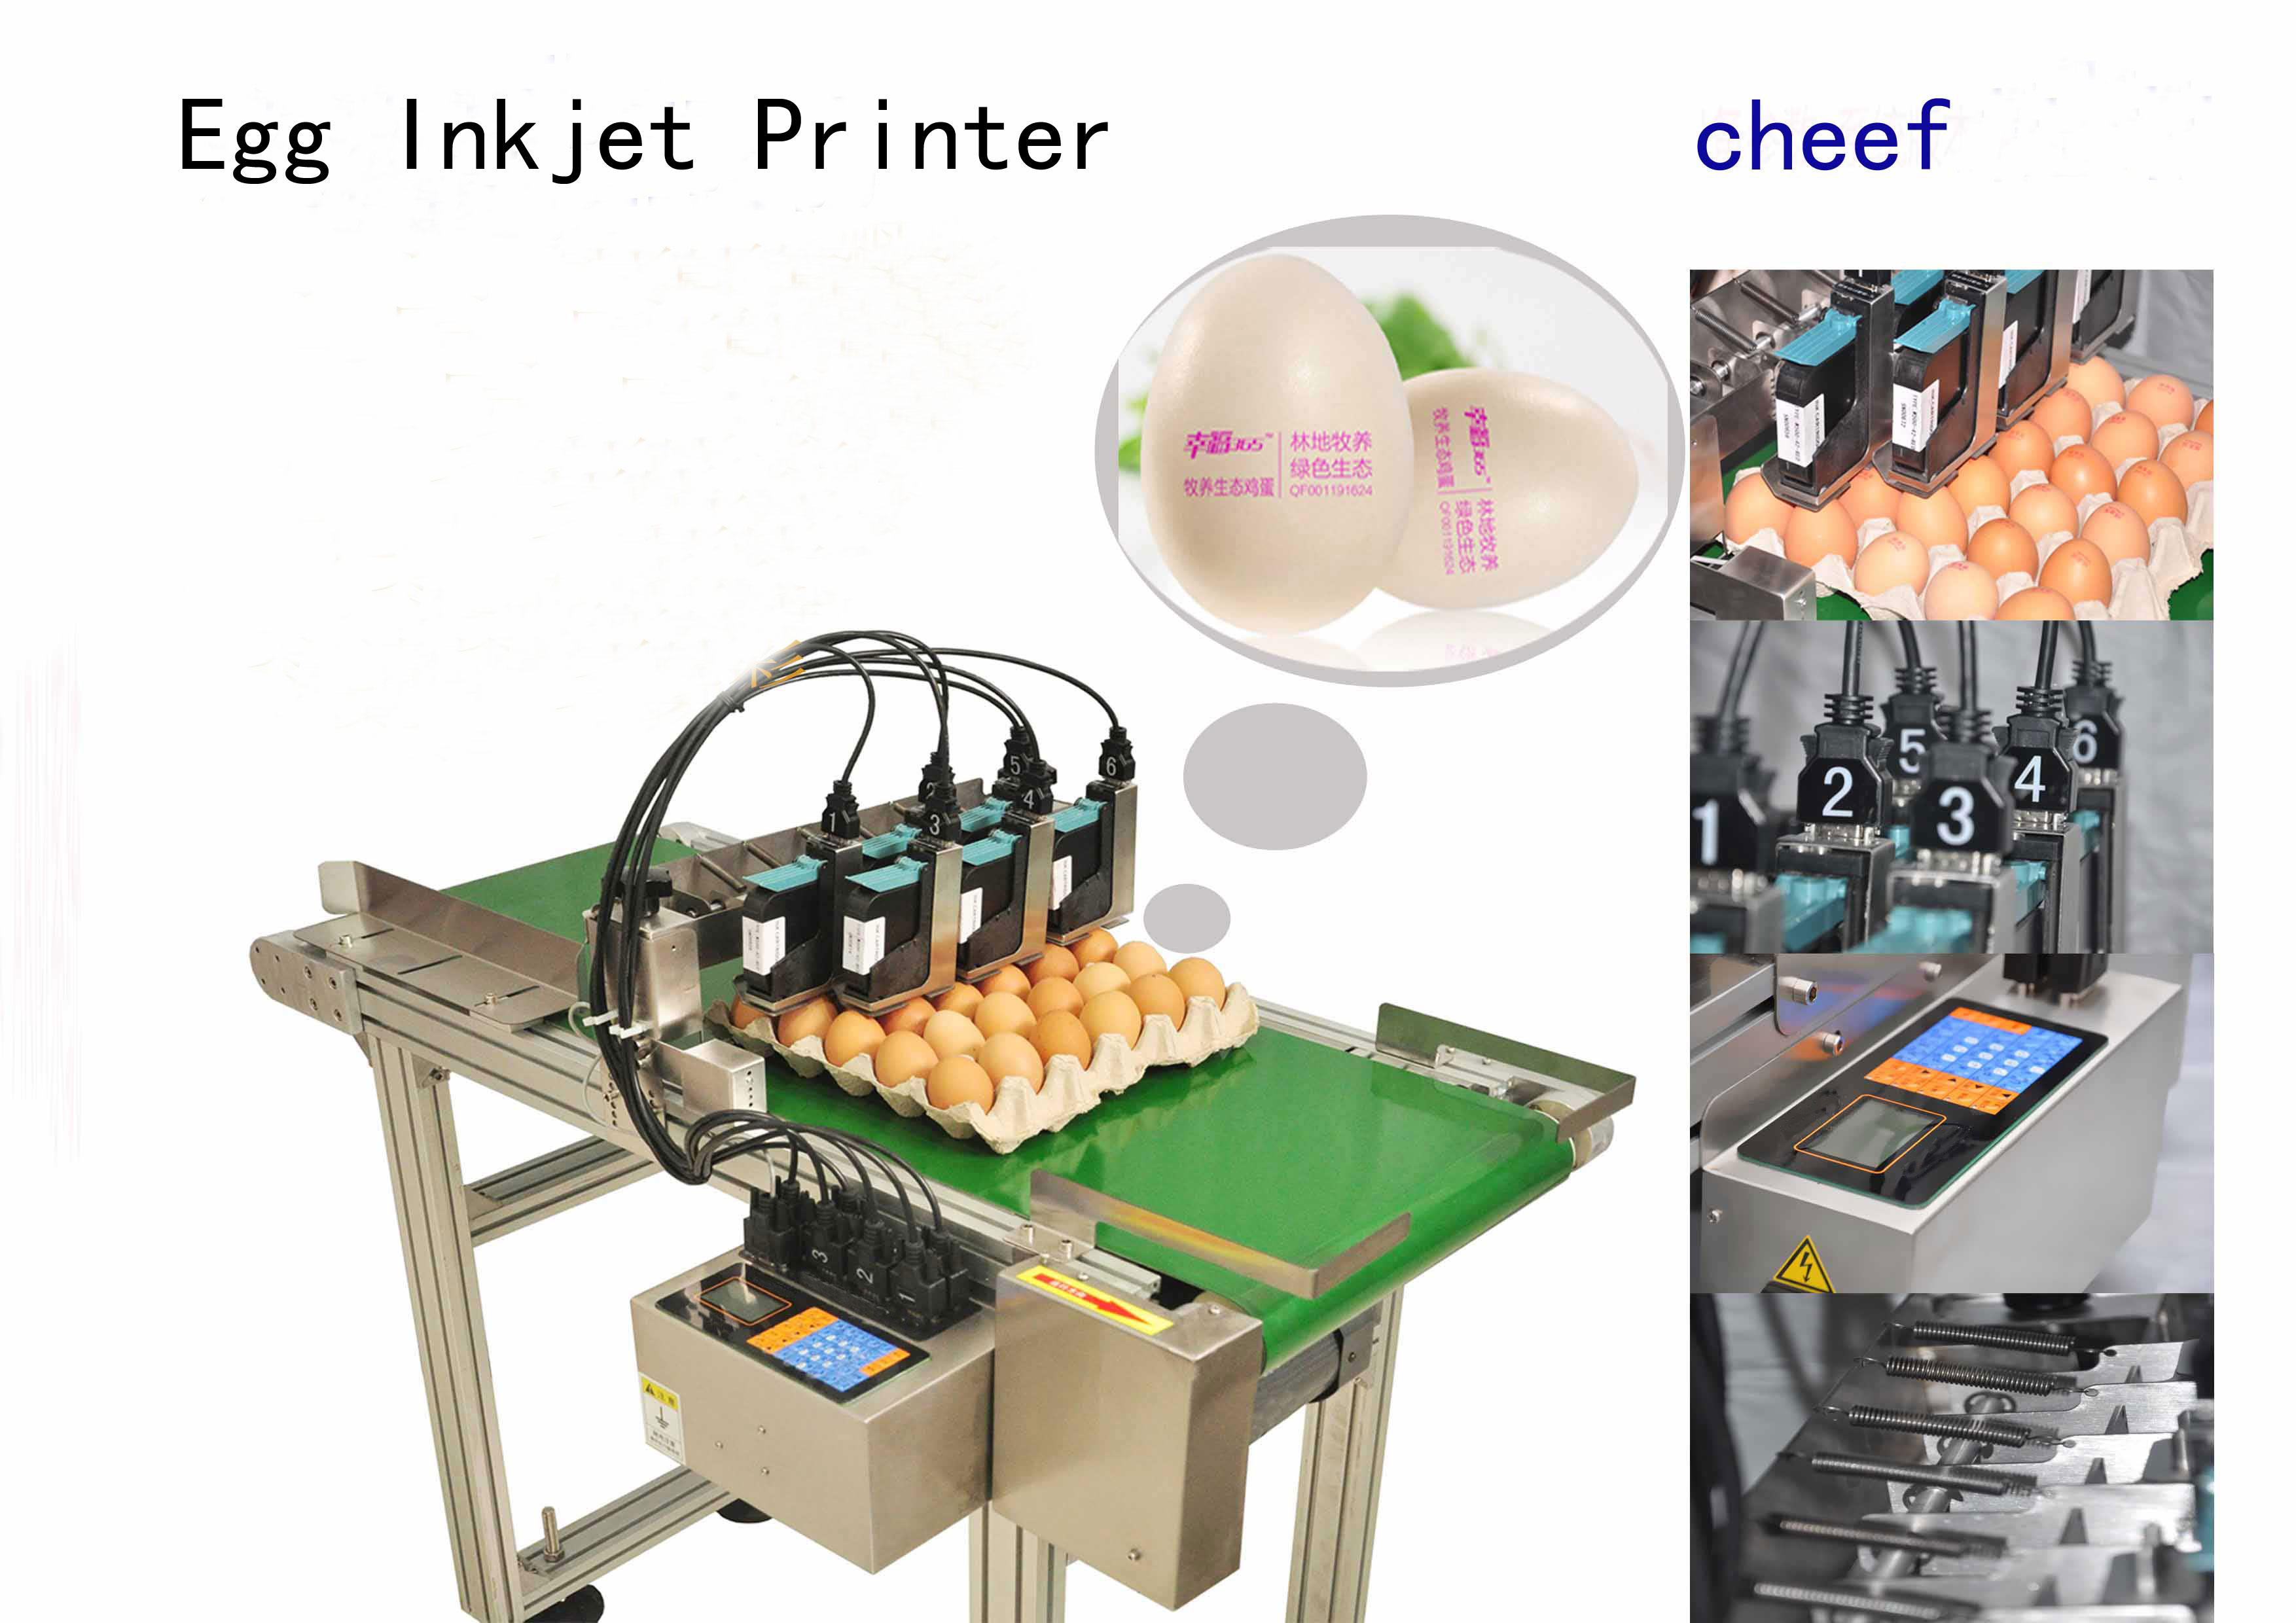 производитель поставляют высокоэффективные струйные принтеры с индивидуальной печатью с 2-метровым конвейером